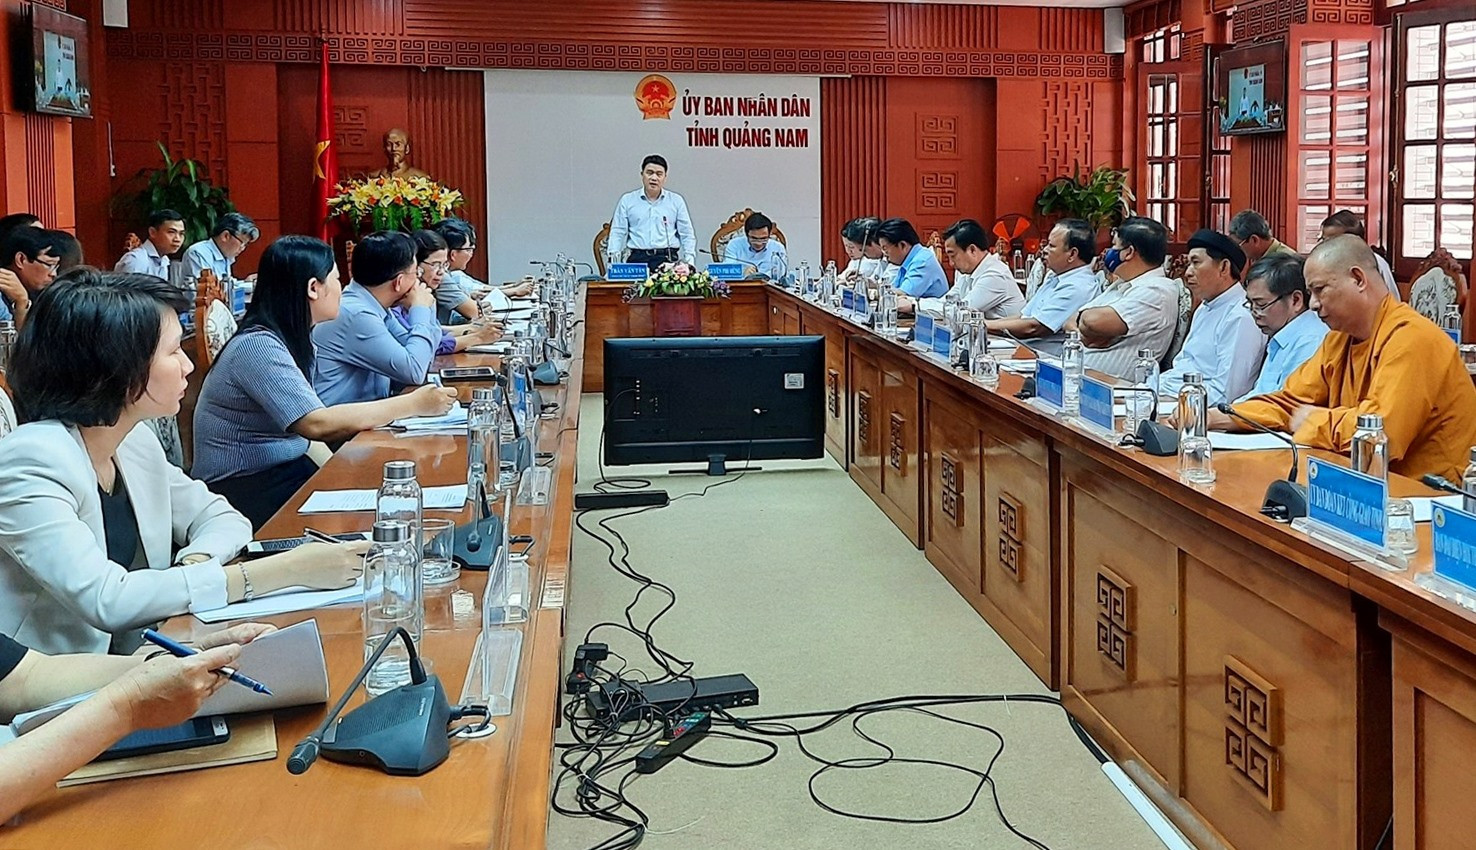 Phó Chủ tịch UBND tỉnh Trần Văn Tân đề nghị Mặt trận và các thành viên của Mặt trận đẩy mạnh công tác tuyên truyền, vận động để nhân dân tự phòng chống dịch bệnh Covid-19 hiệu quả. Ảnh: Đ. Đ